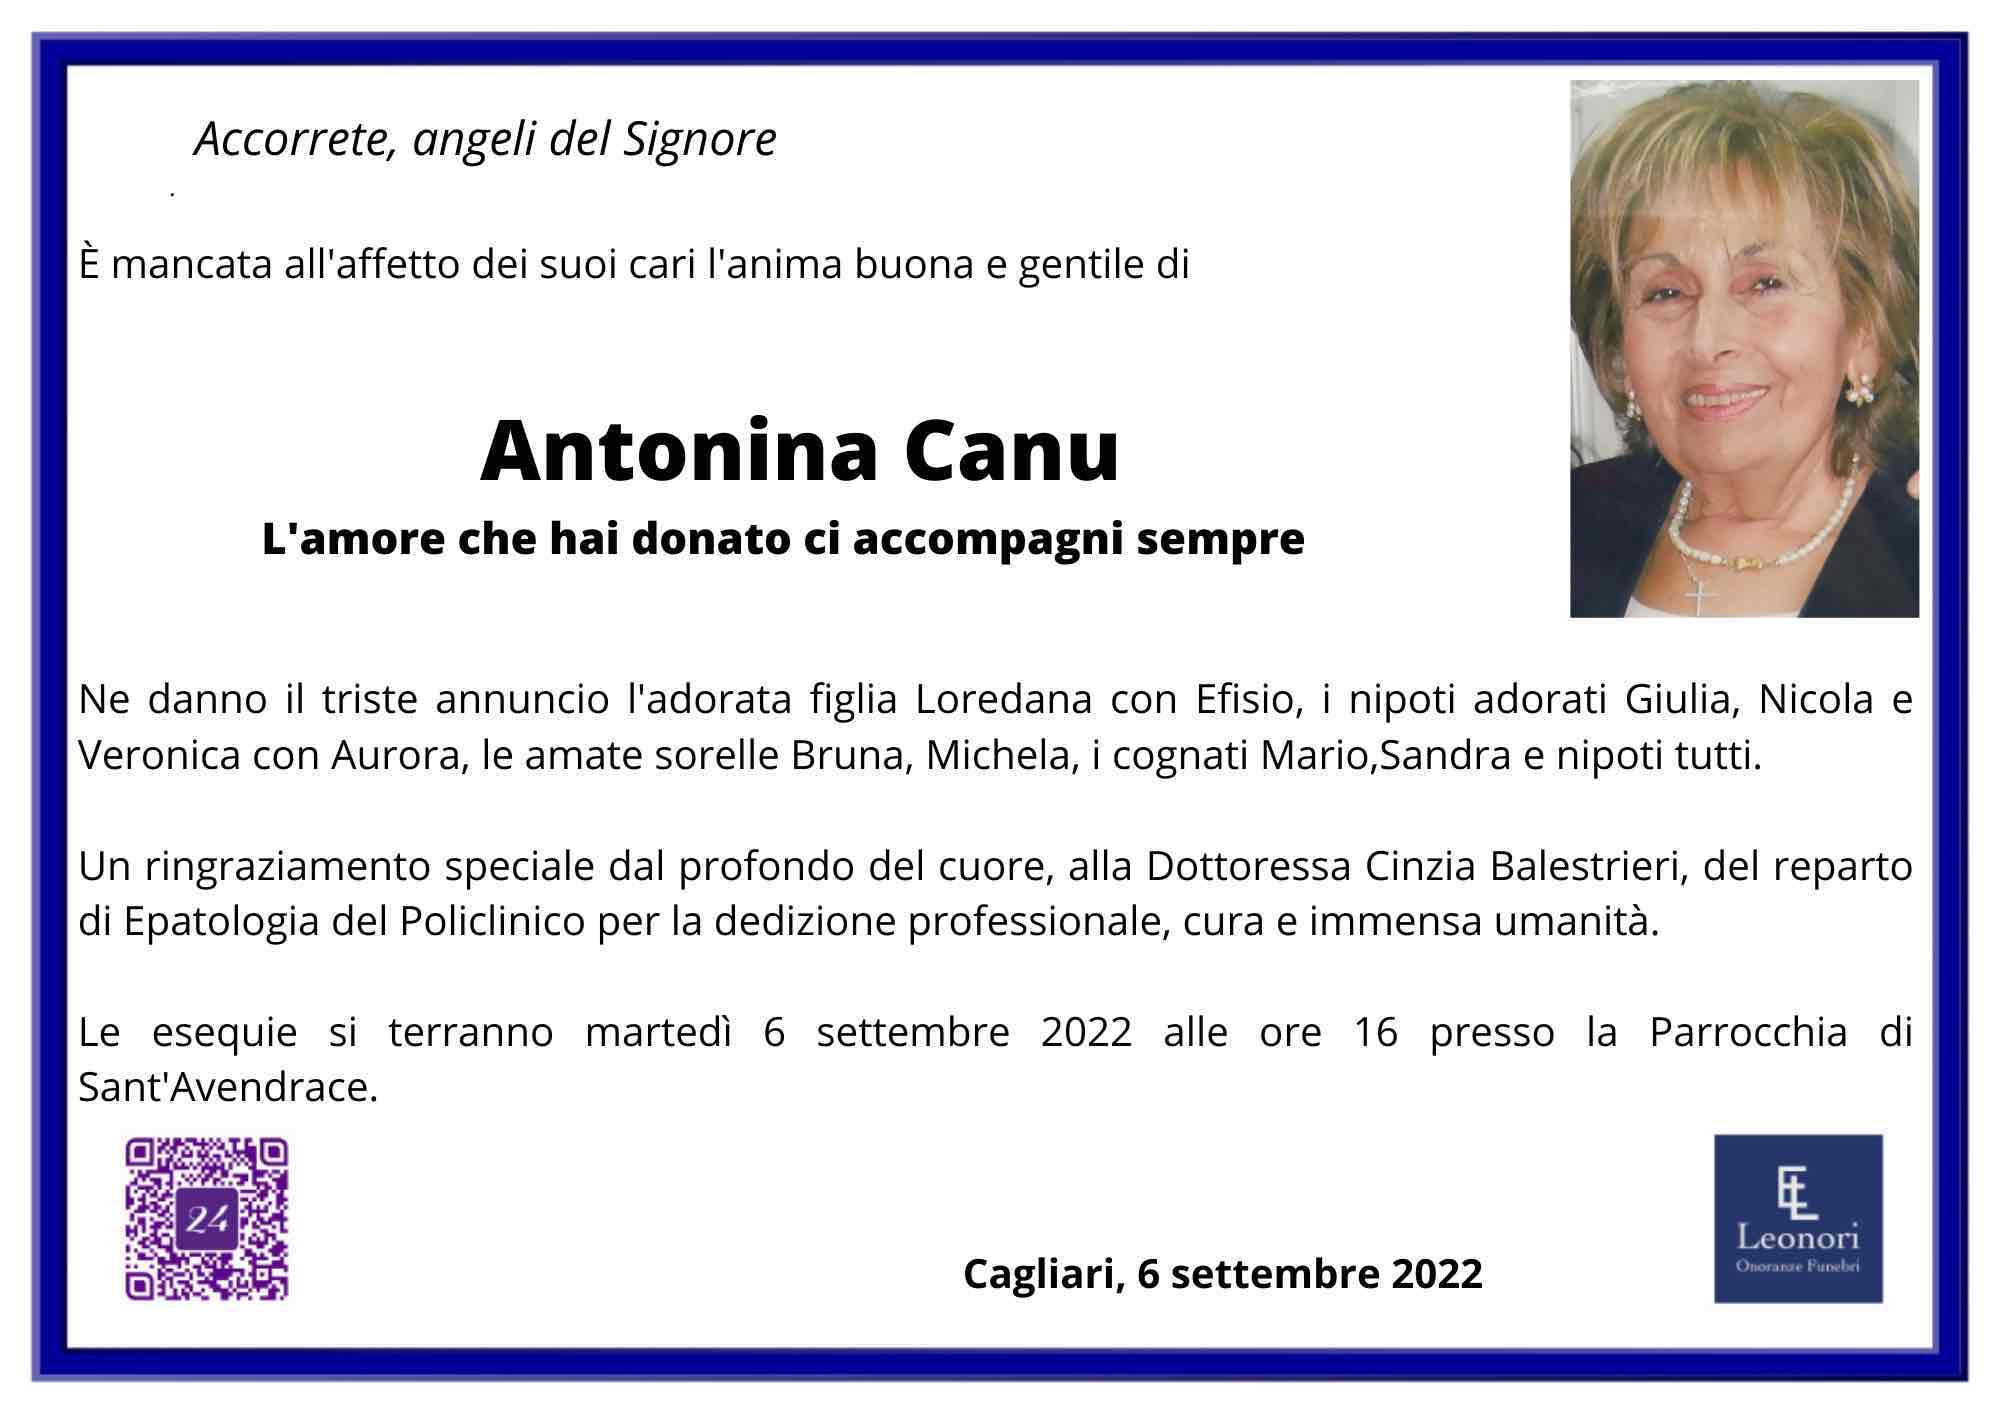 Antonina Canu